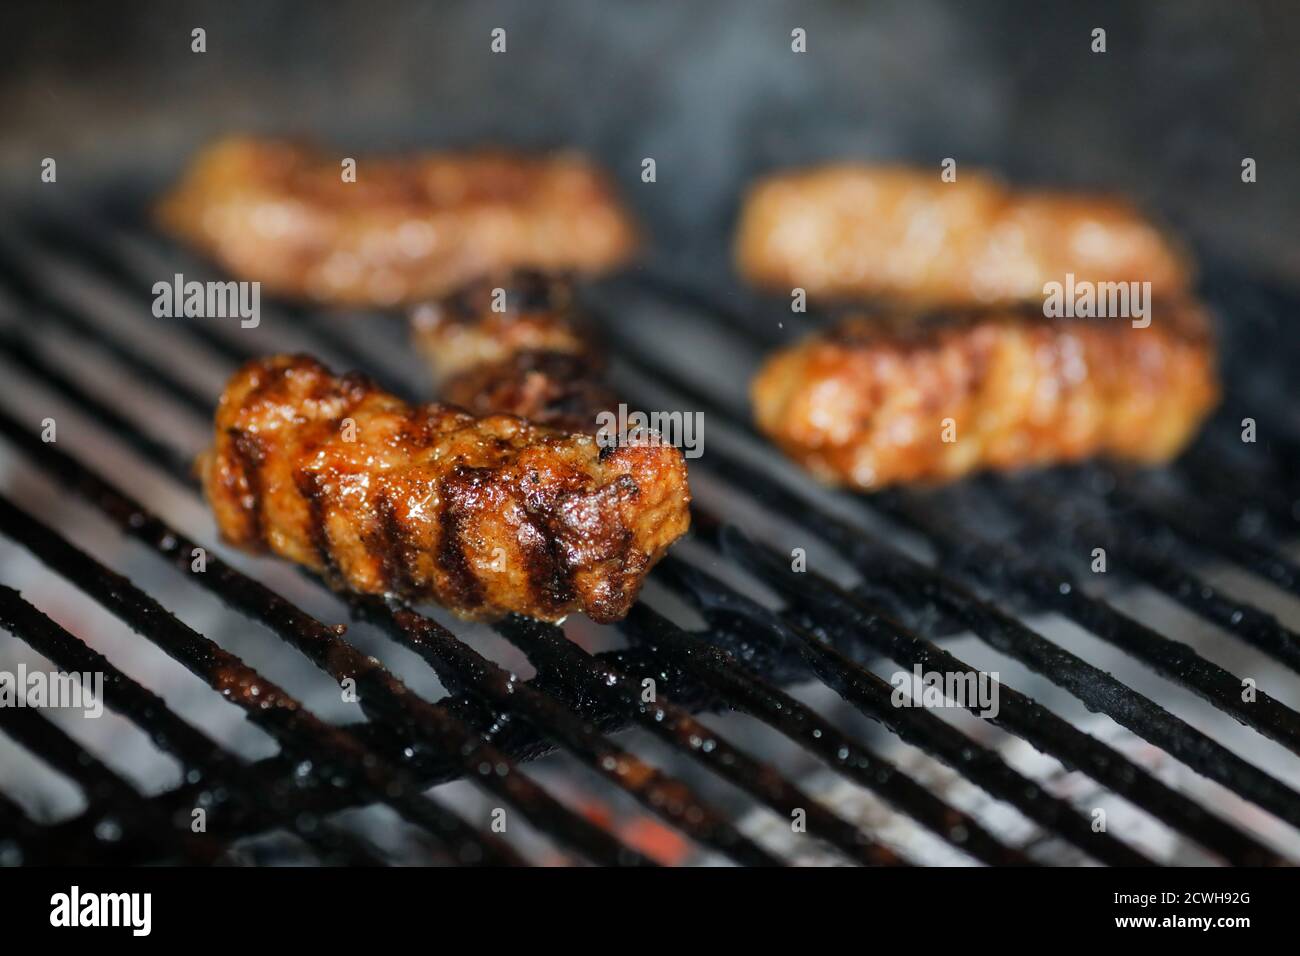 Image de faible profondeur de champ (mise au point sélective) avec mici traditionnel roumain (mititei), rouleaux de viande hachée grillés en forme cylindrique sur le barbecue Banque D'Images